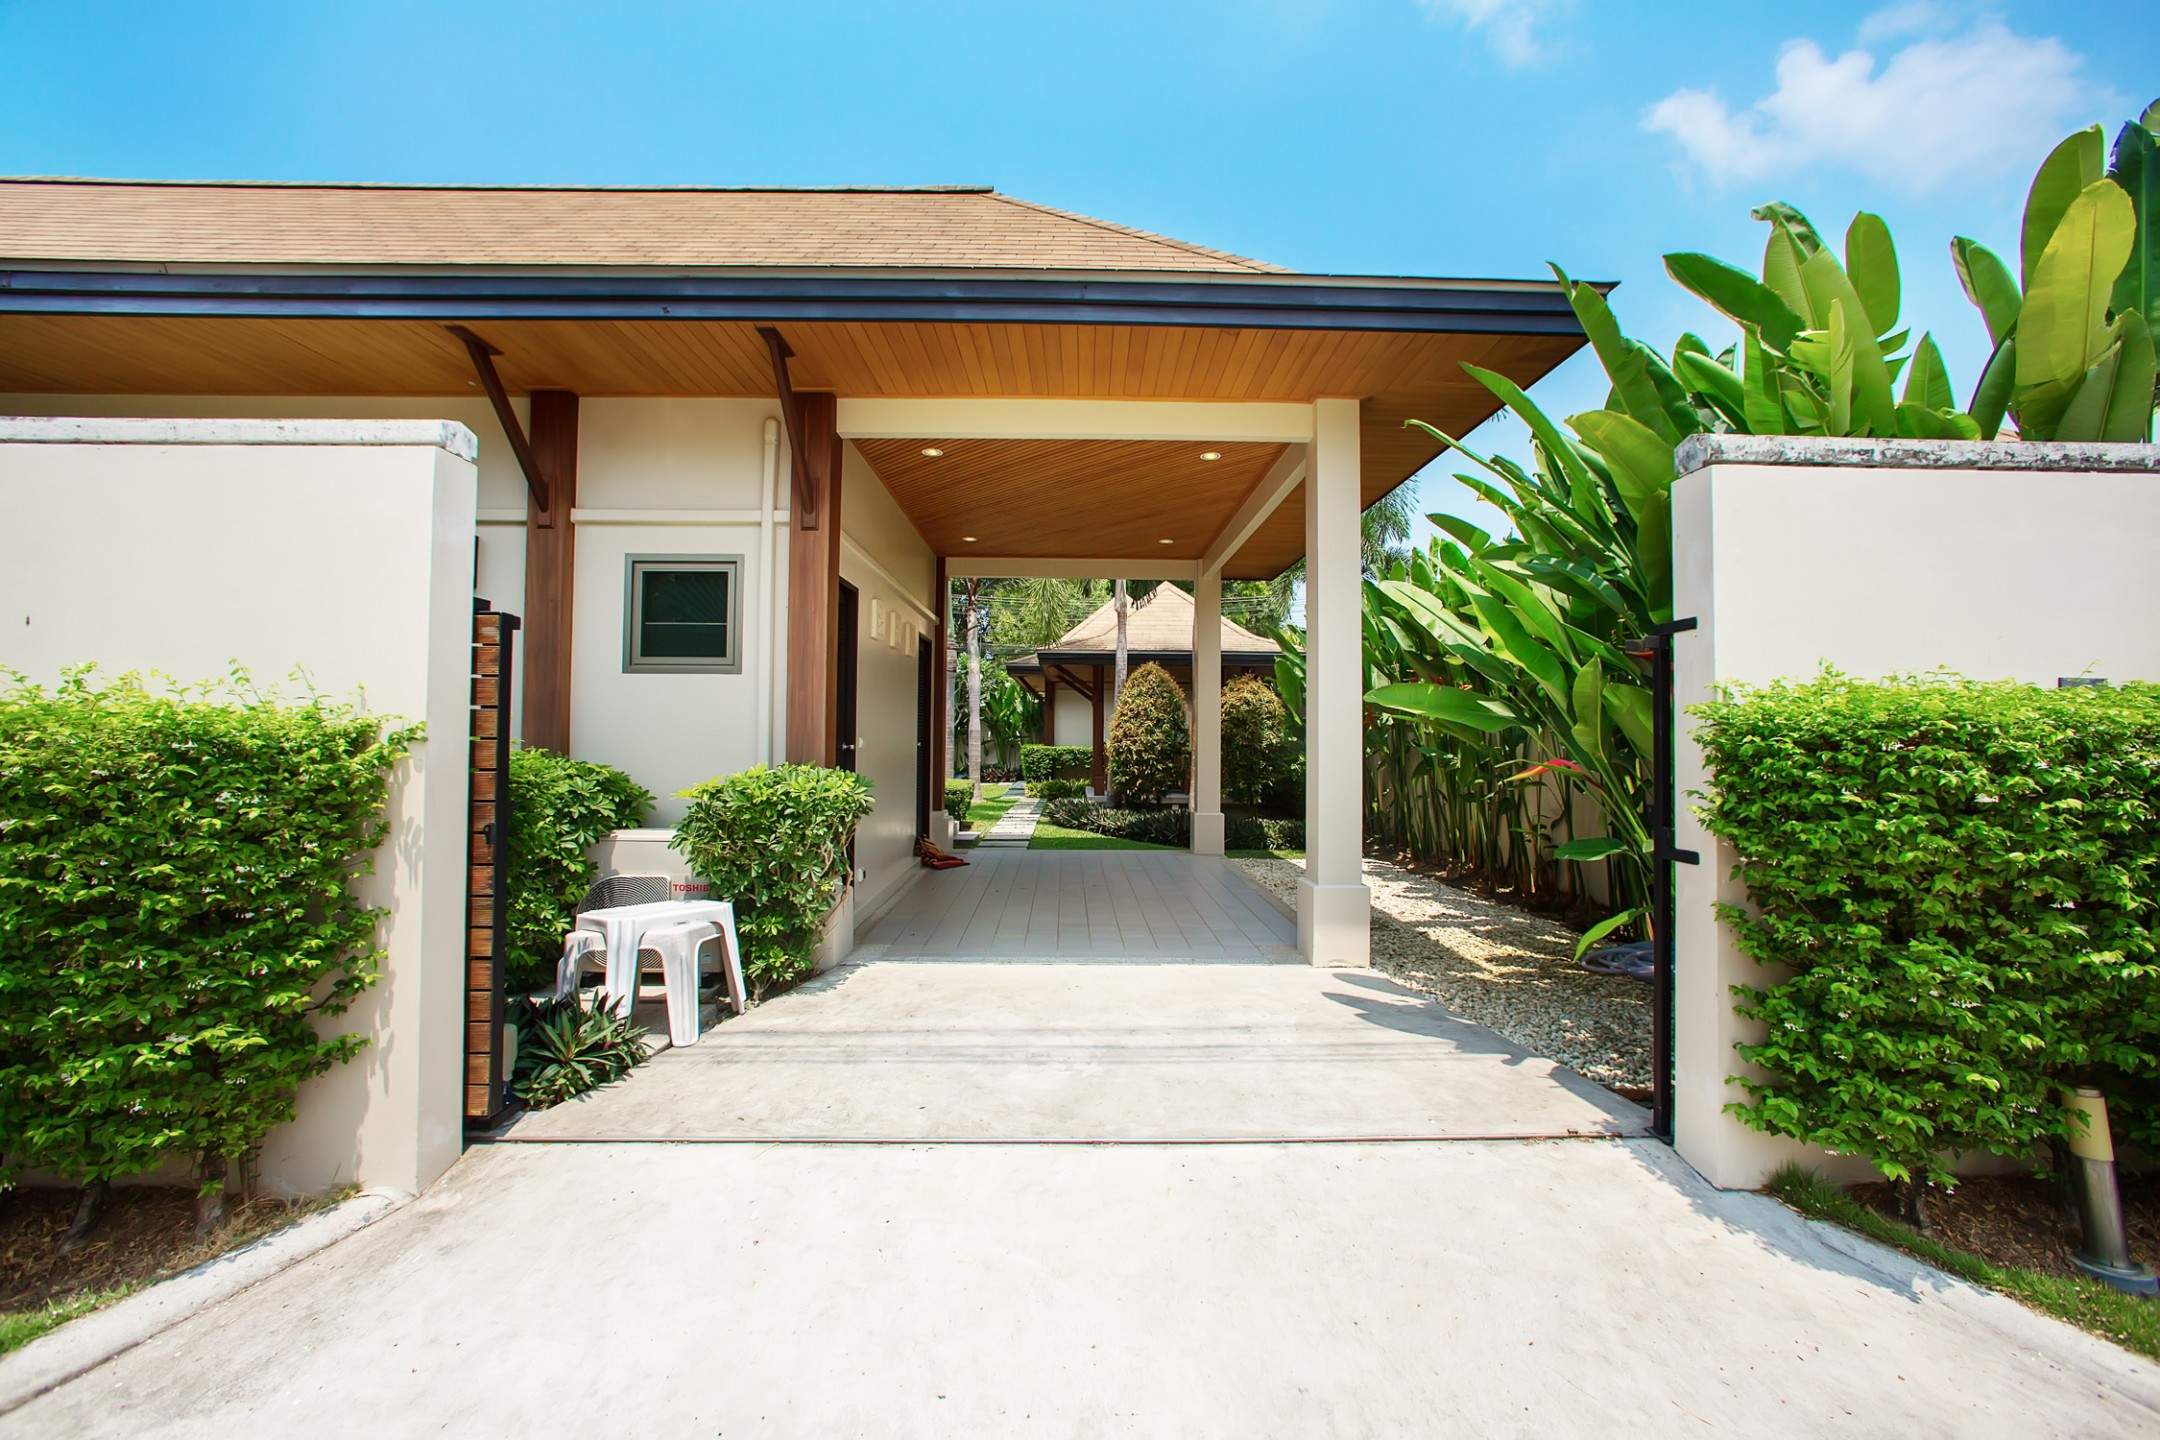 Rent villa Hatiti, Thailand, Phuket, Nai Harn | Villacarte